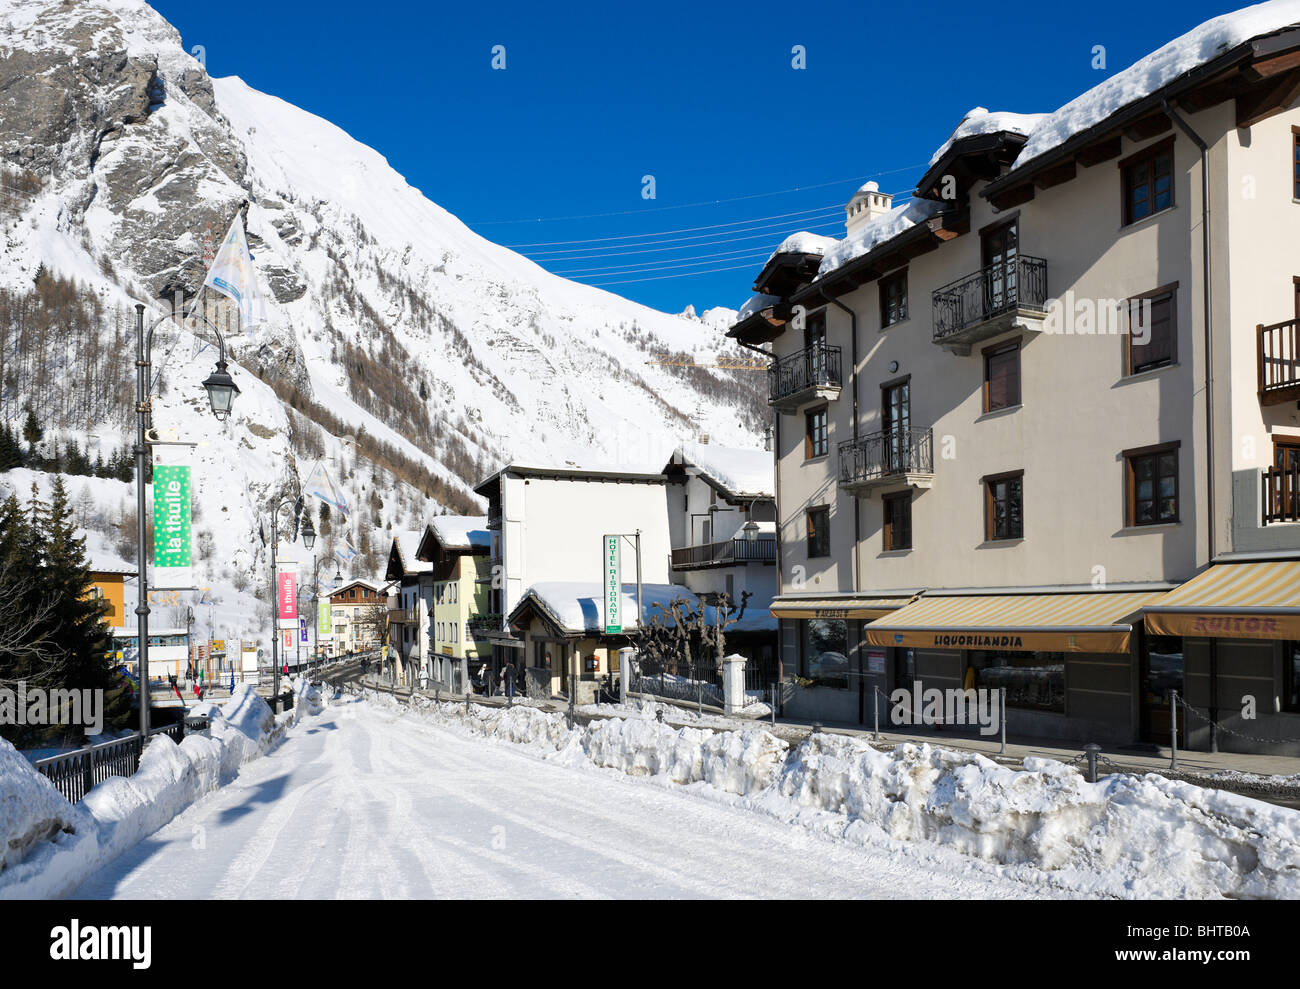 Strada principale attraverso il centro del resort, La Thuile, Valle d'Aosta, Italia Foto Stock